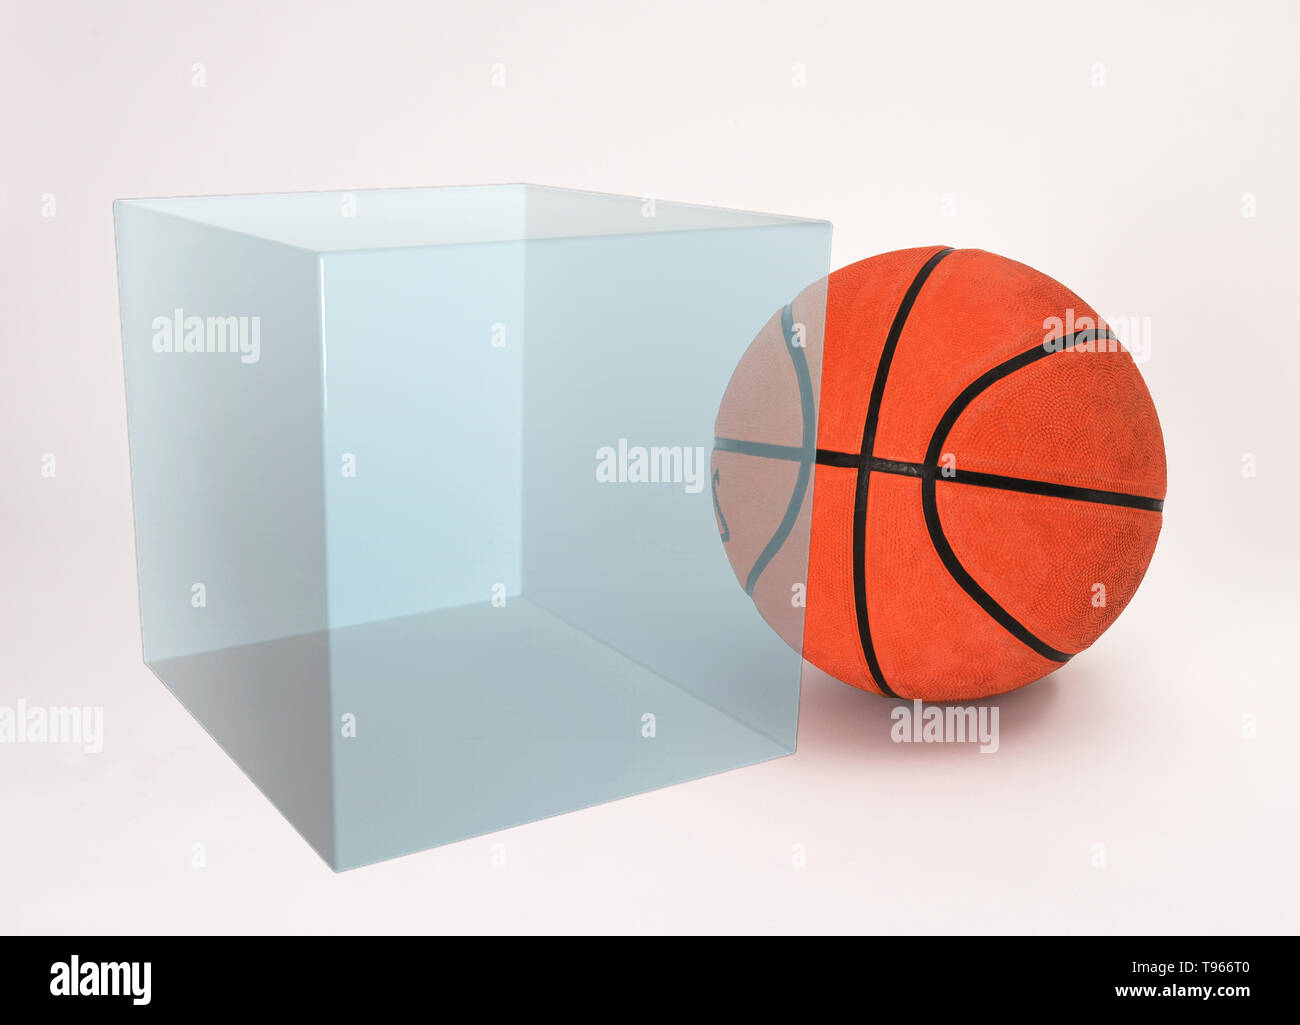 Die Box enthält 1 Mol Gas; das molare Volumen eines idealen Gases ist 22,4 L bei 0°C und 1 atm Druck. Ein Basketball passt locker in eine Box in diesem Band. Stockfoto